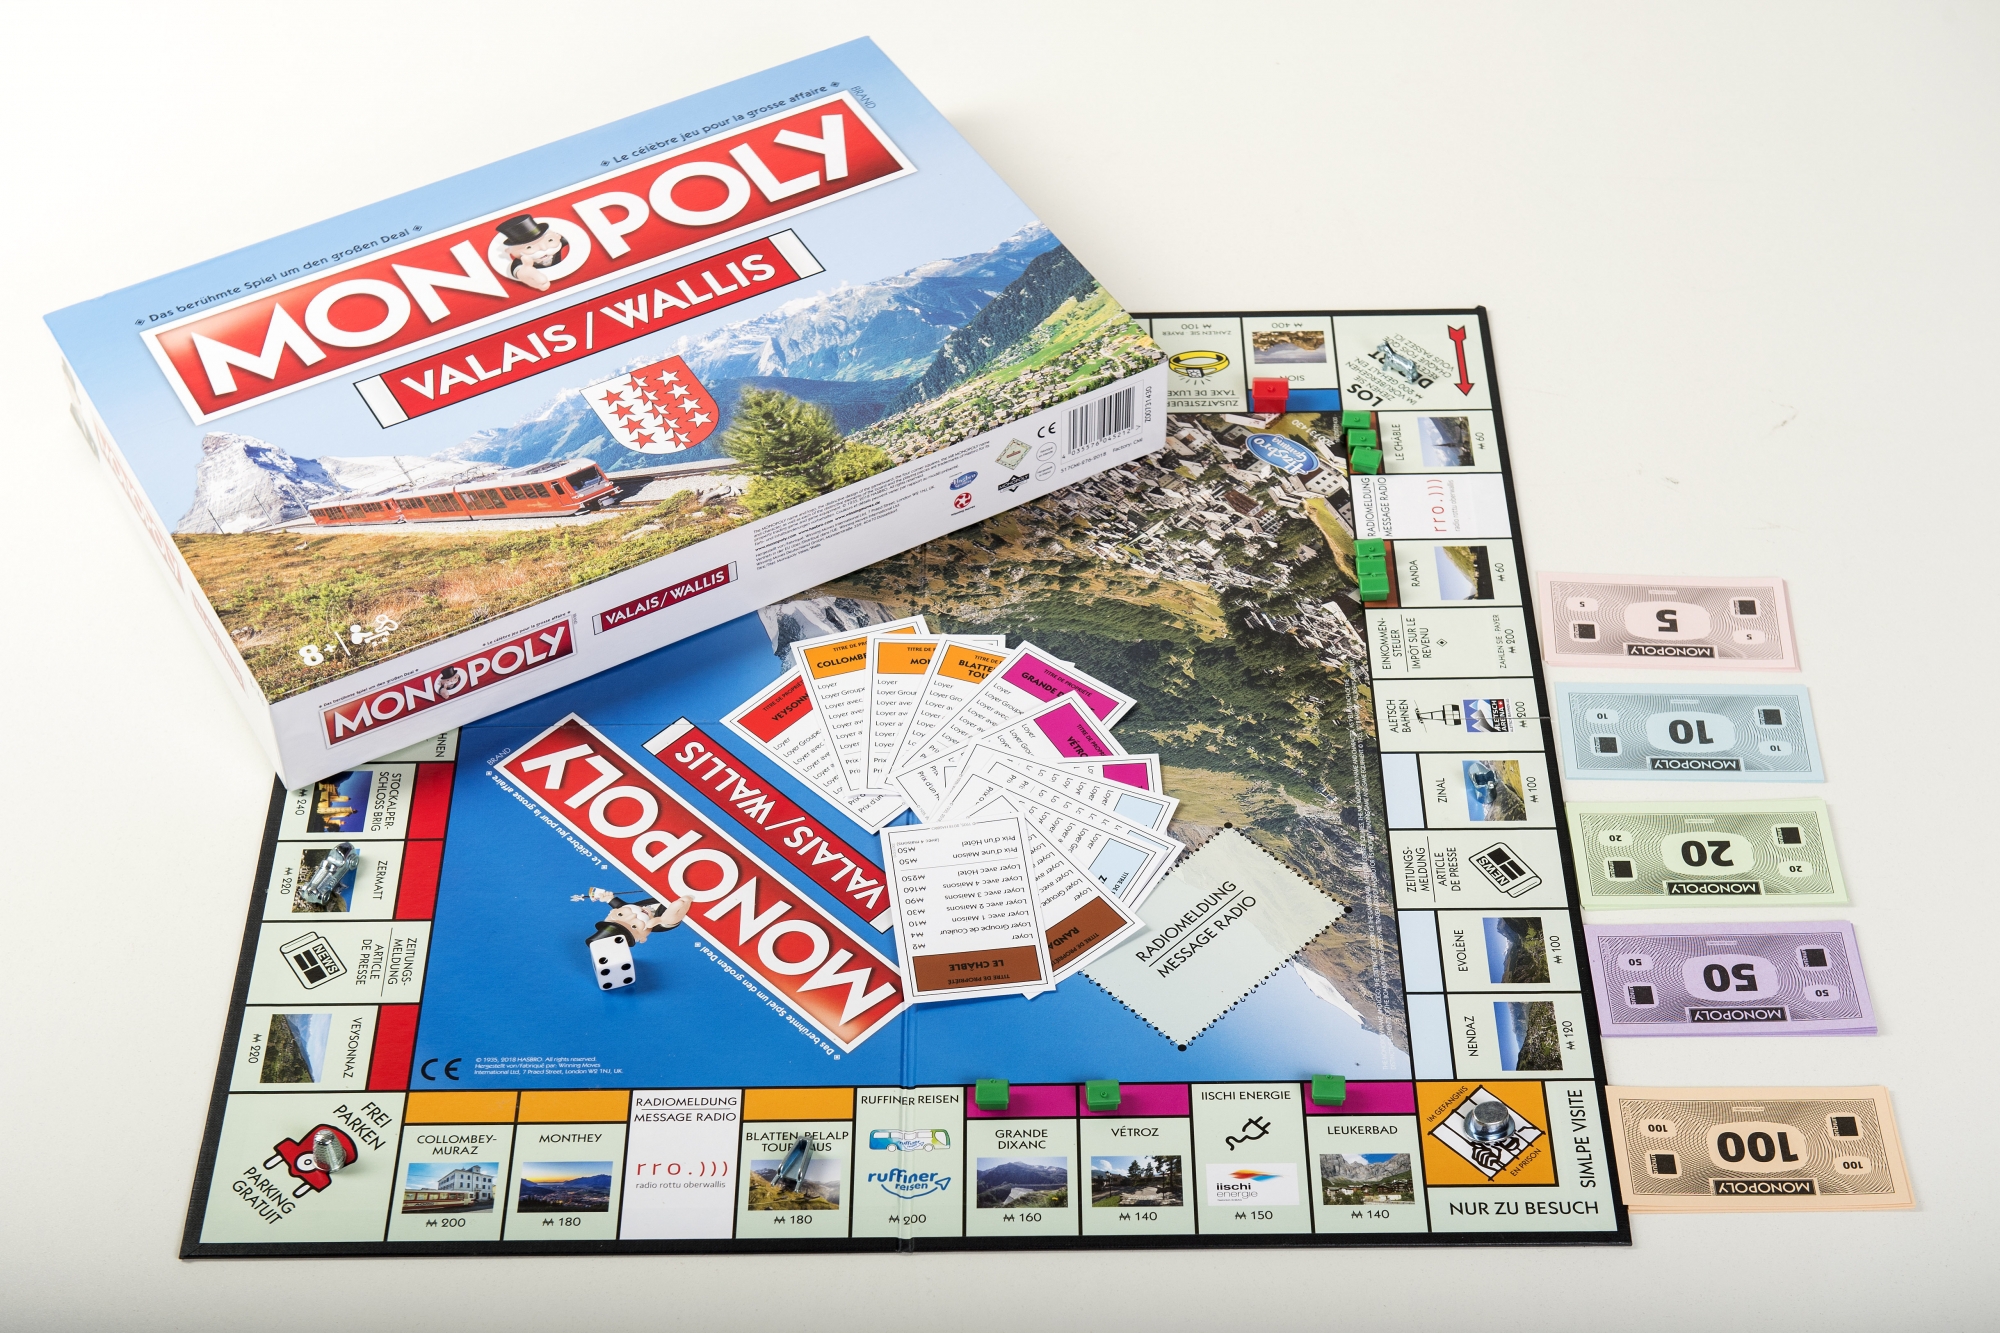 Le Monopoly version valaisanne est désormais disponible.